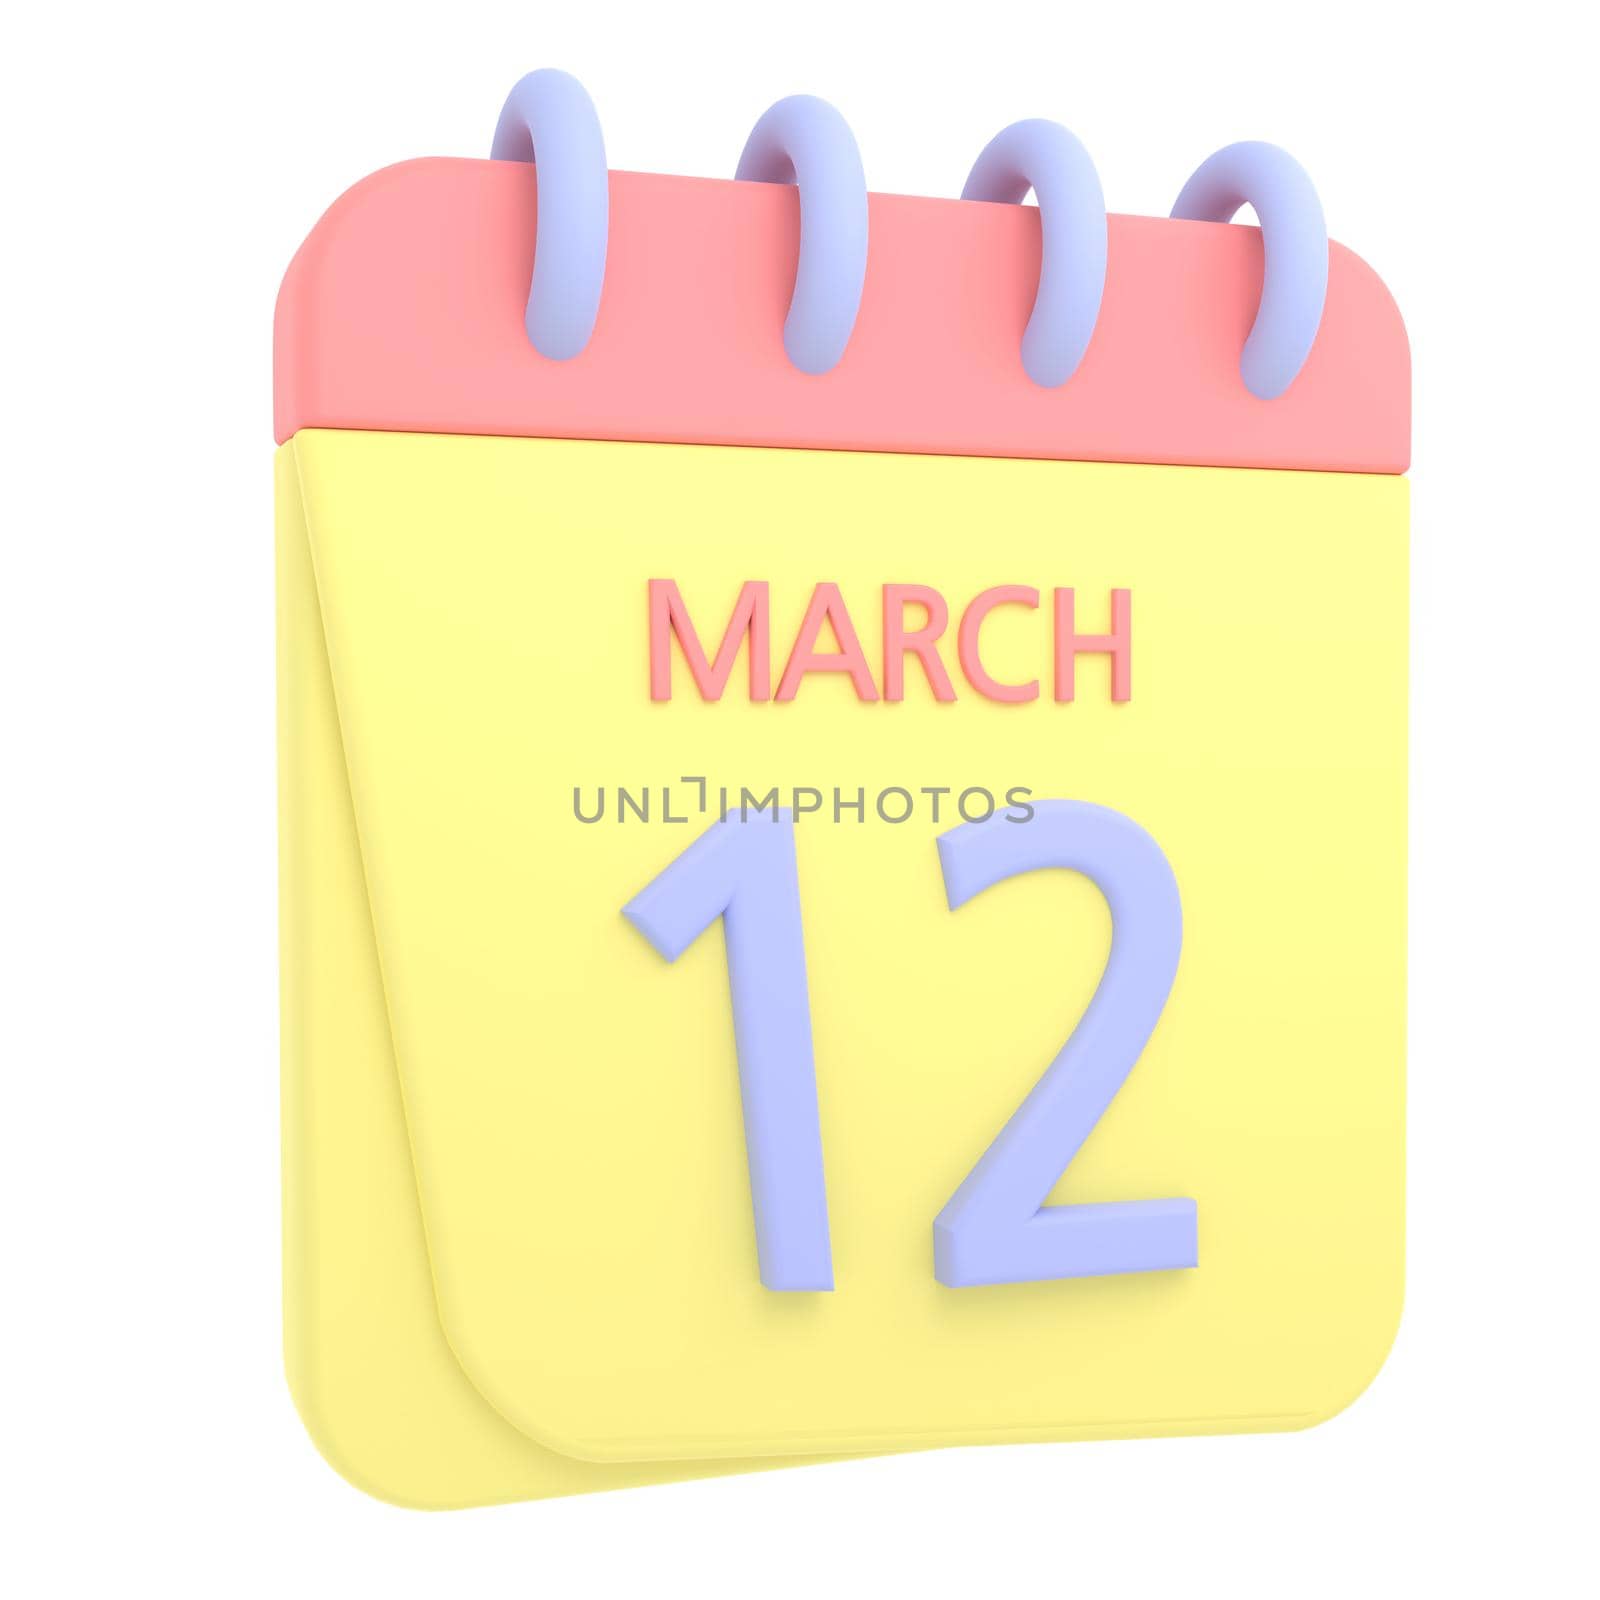 12th March 3D calendar icon by AnnaMarin